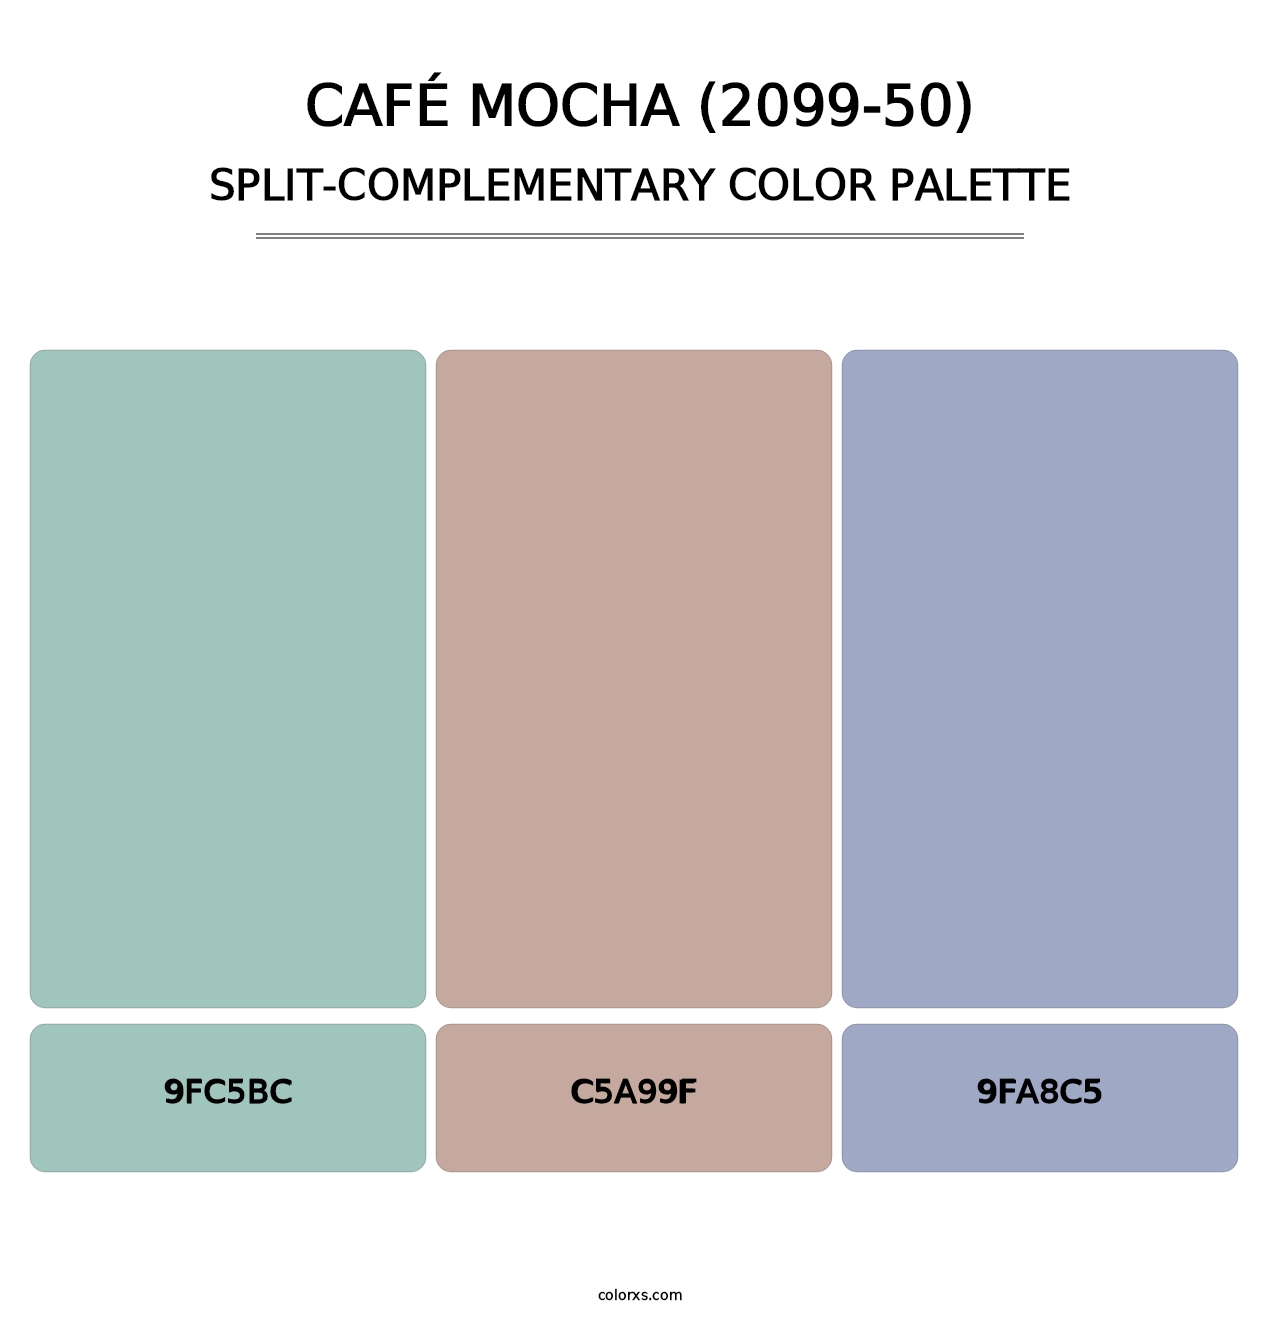 Café Mocha (2099-50) - Split-Complementary Color Palette